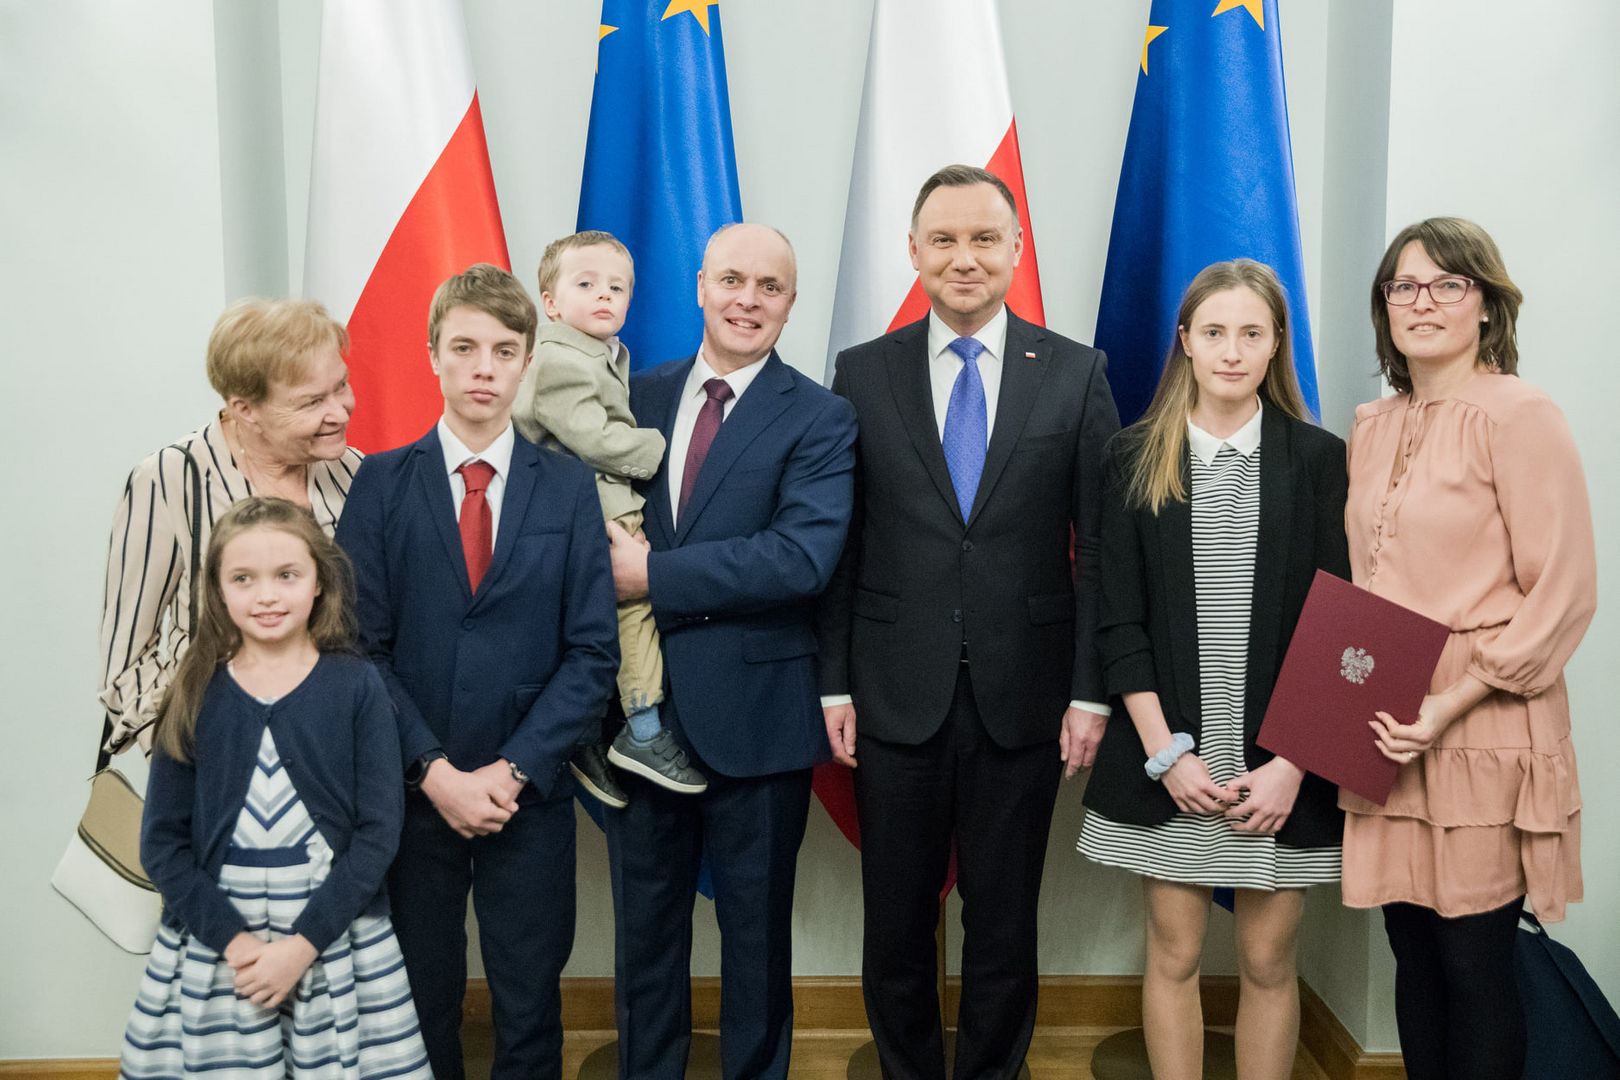 Na zdjęciu prof. Powałka z rodziną oraz prezydent Andrzej Duda